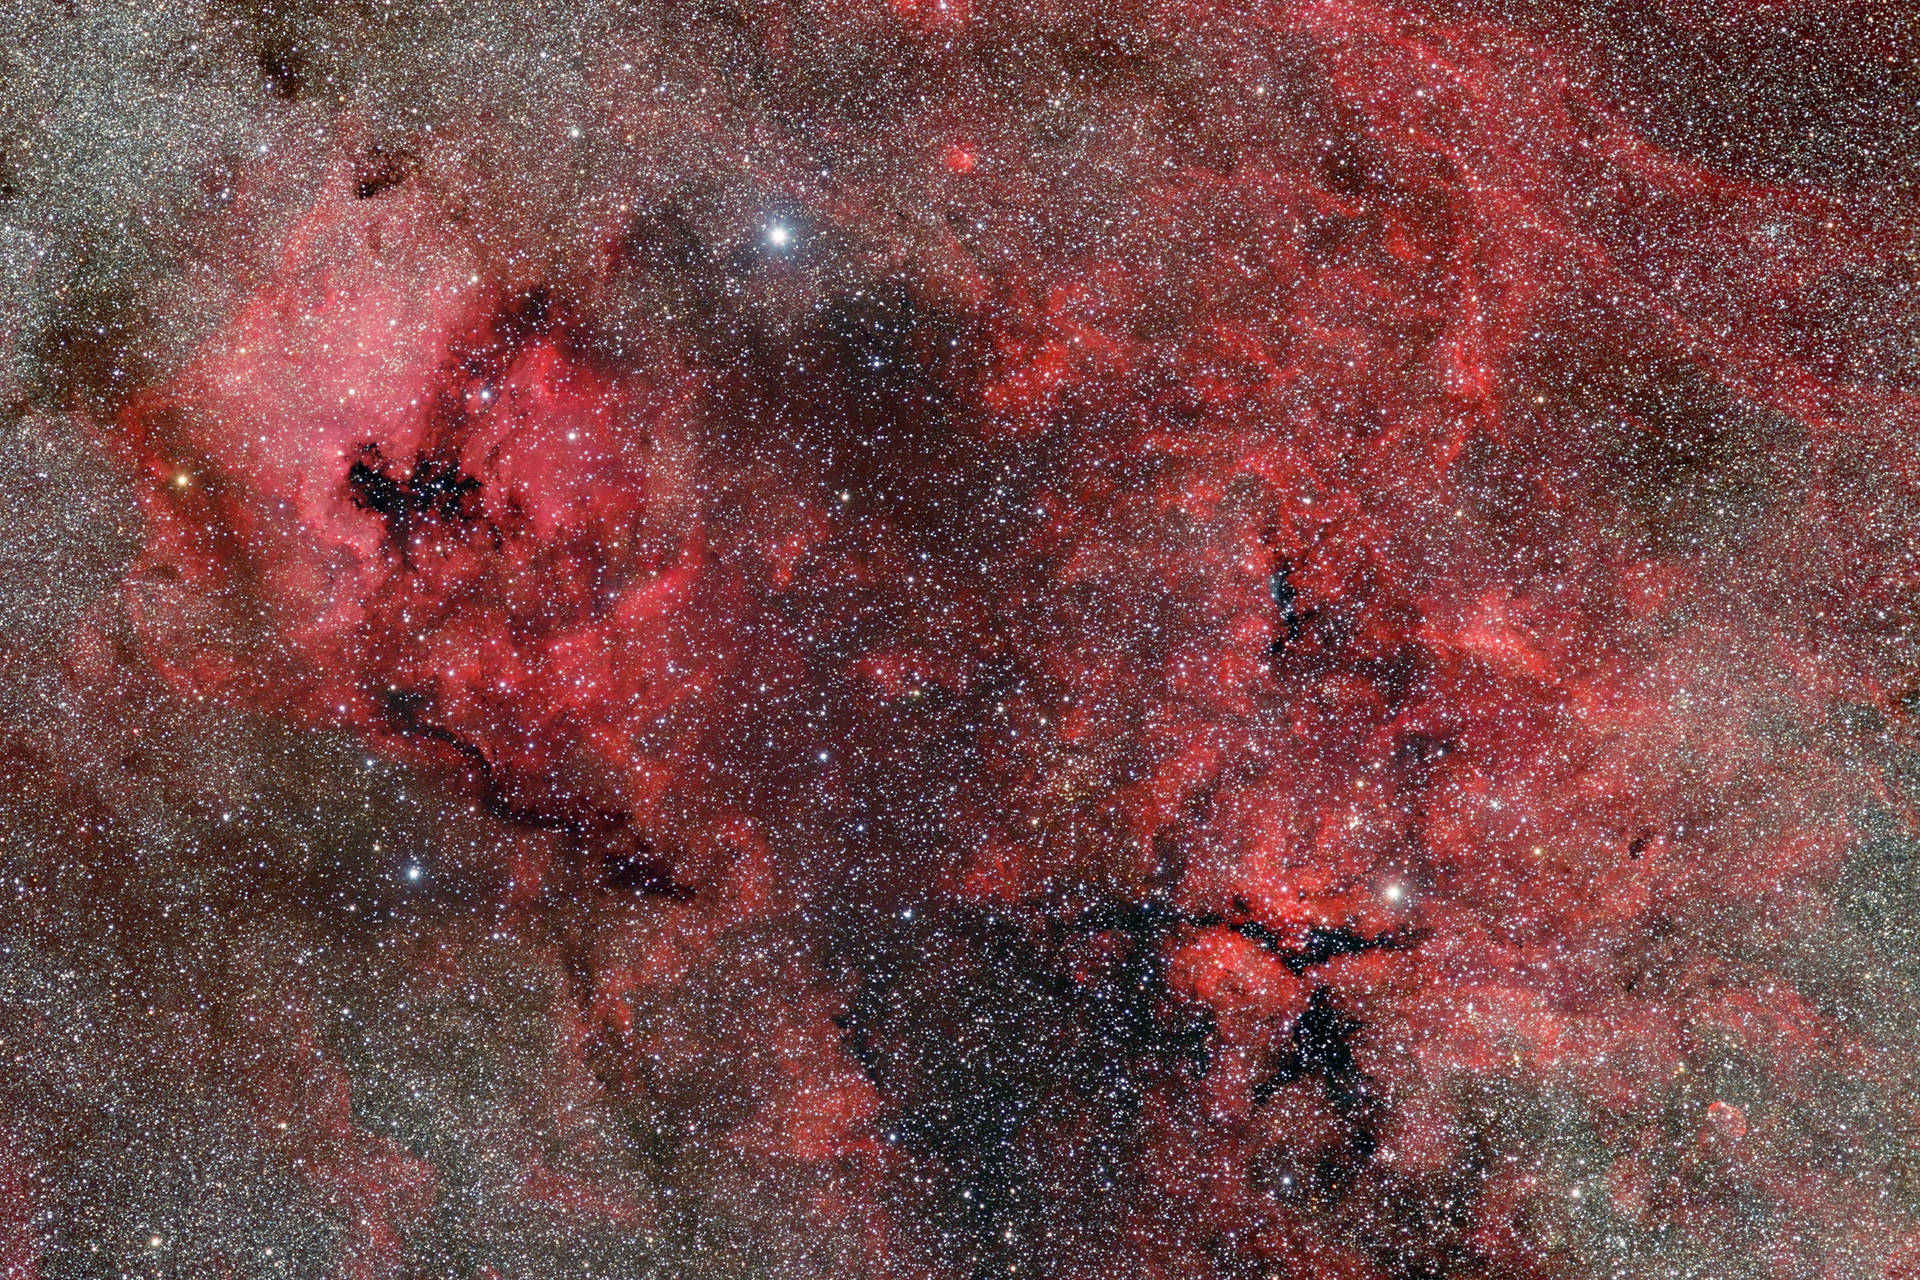 Nebula 5184X3456 Wallpaper and Background Image